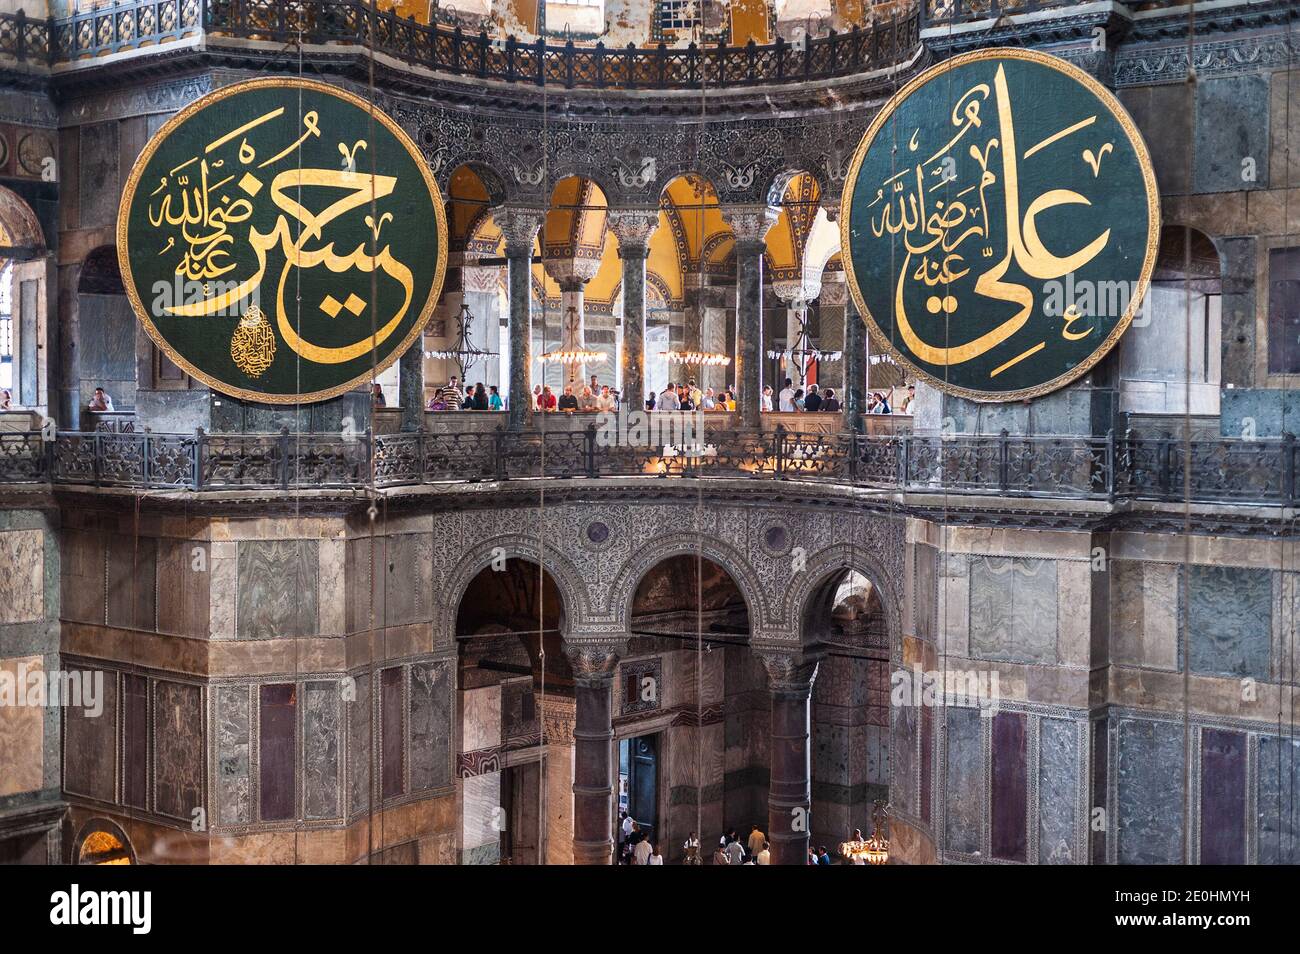 Arquitectura Bizantina del interior de Santa Sofía Aya Sophia in Sultanahmet Estambul con medallón que lleva caligrafía árabe del imperio otomano Foto de stock